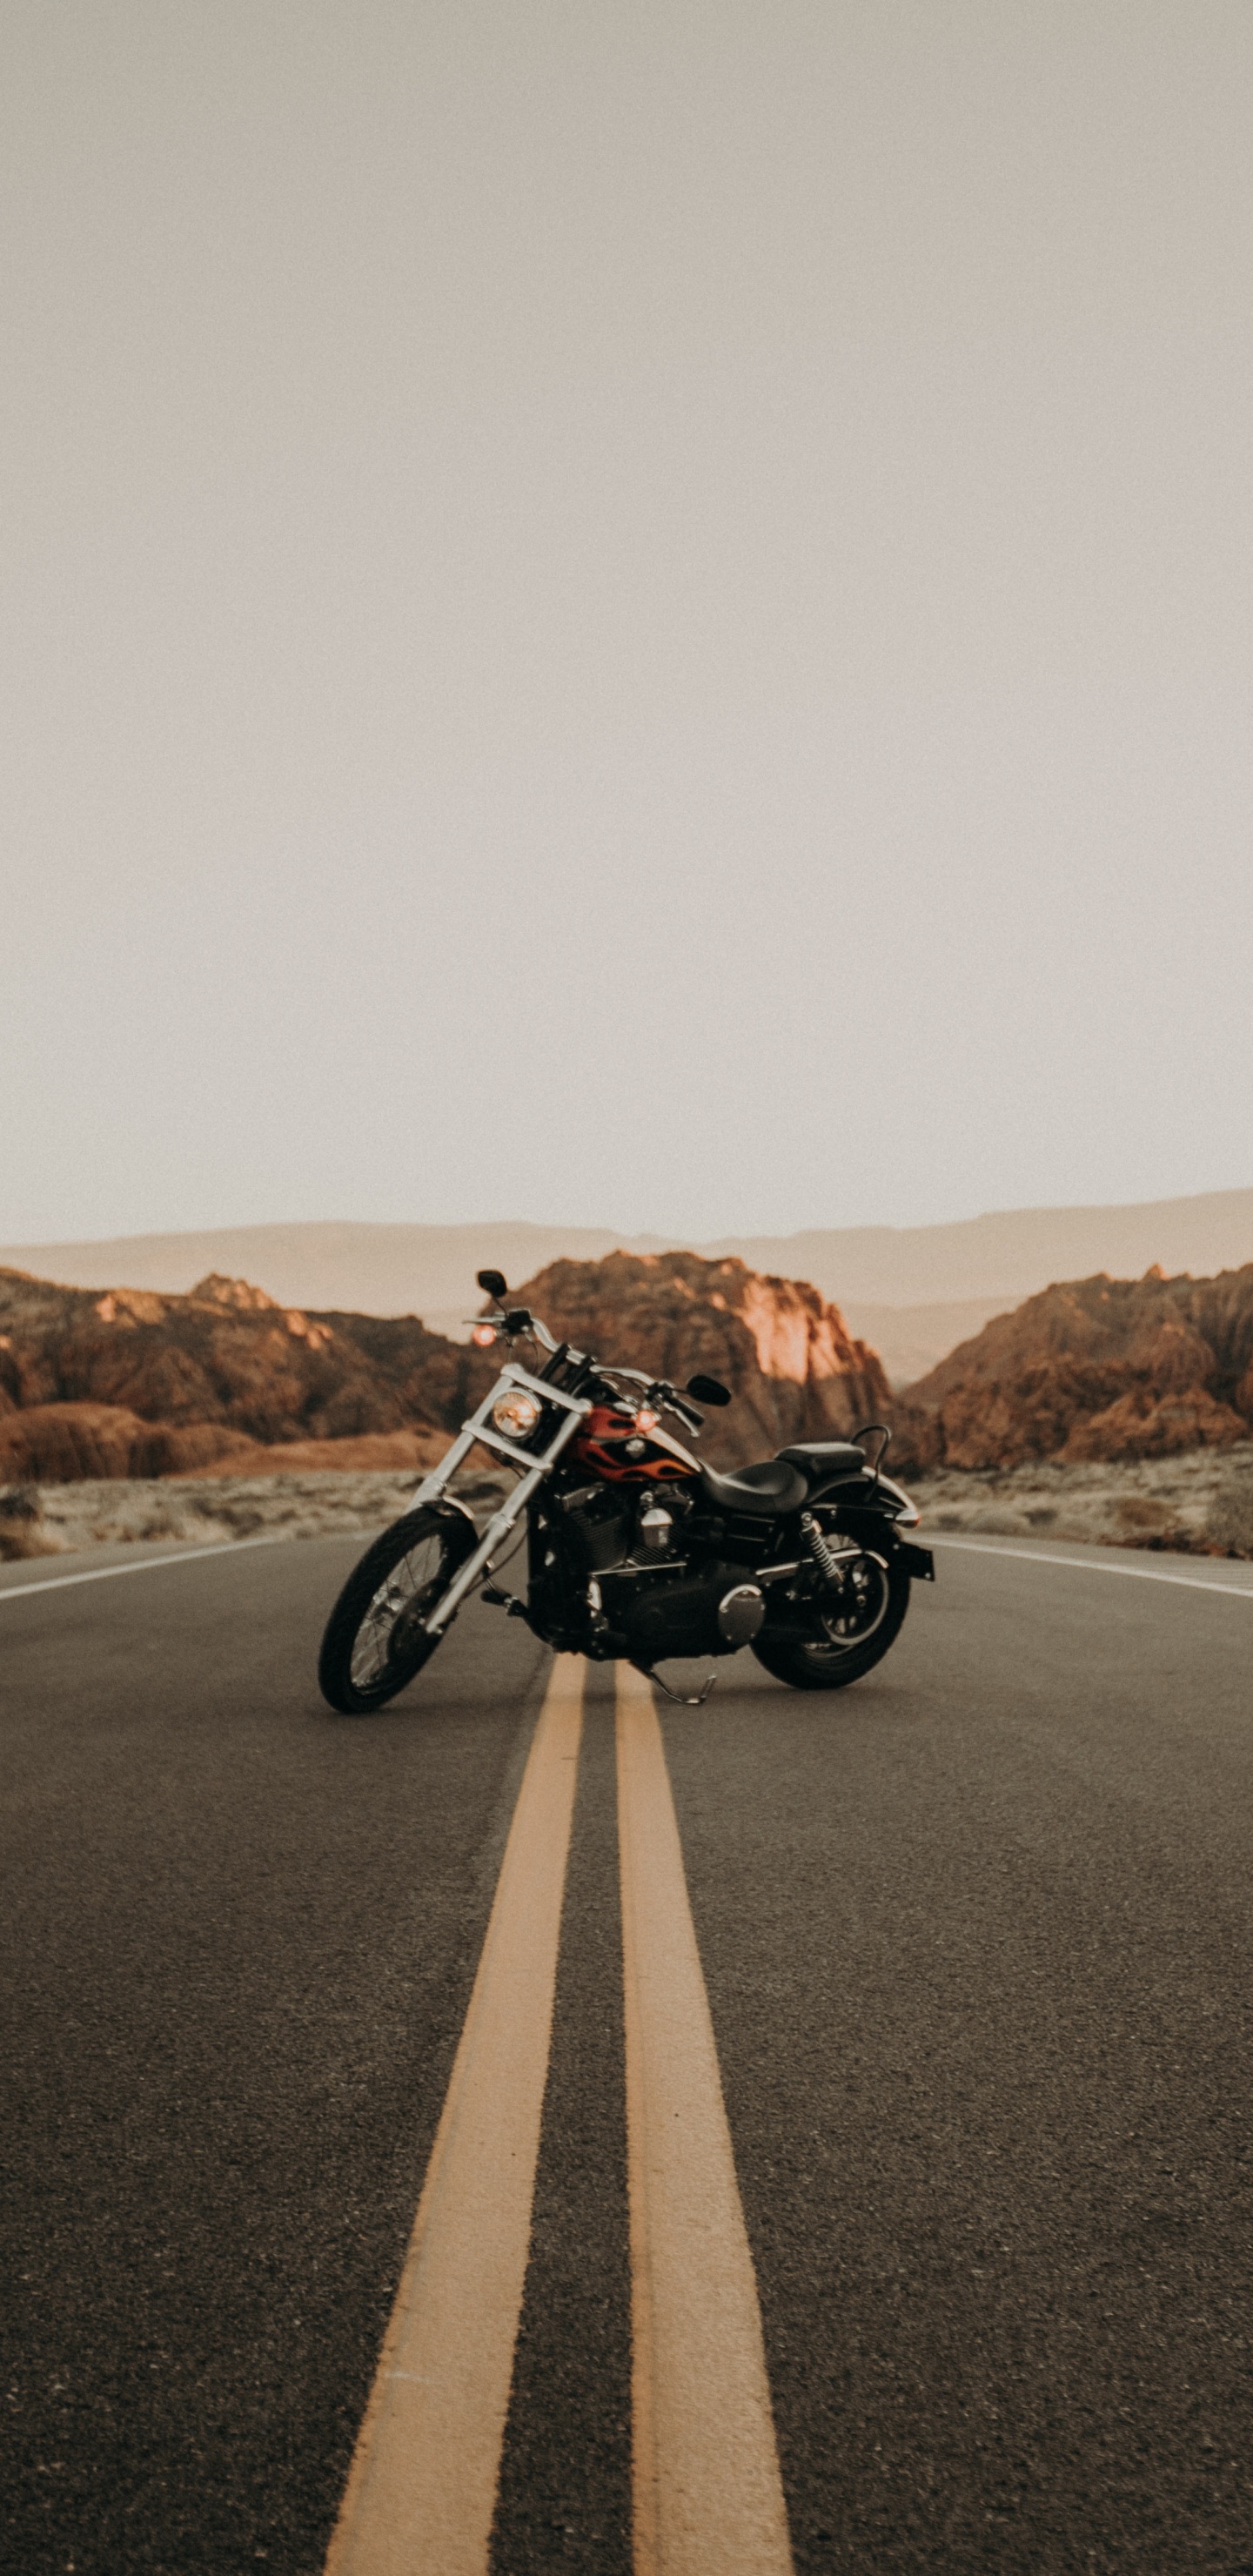 Motocicleta en Blanco y Negro en la Carretera Durante el Día. Wallpaper in 1440x2960 Resolution